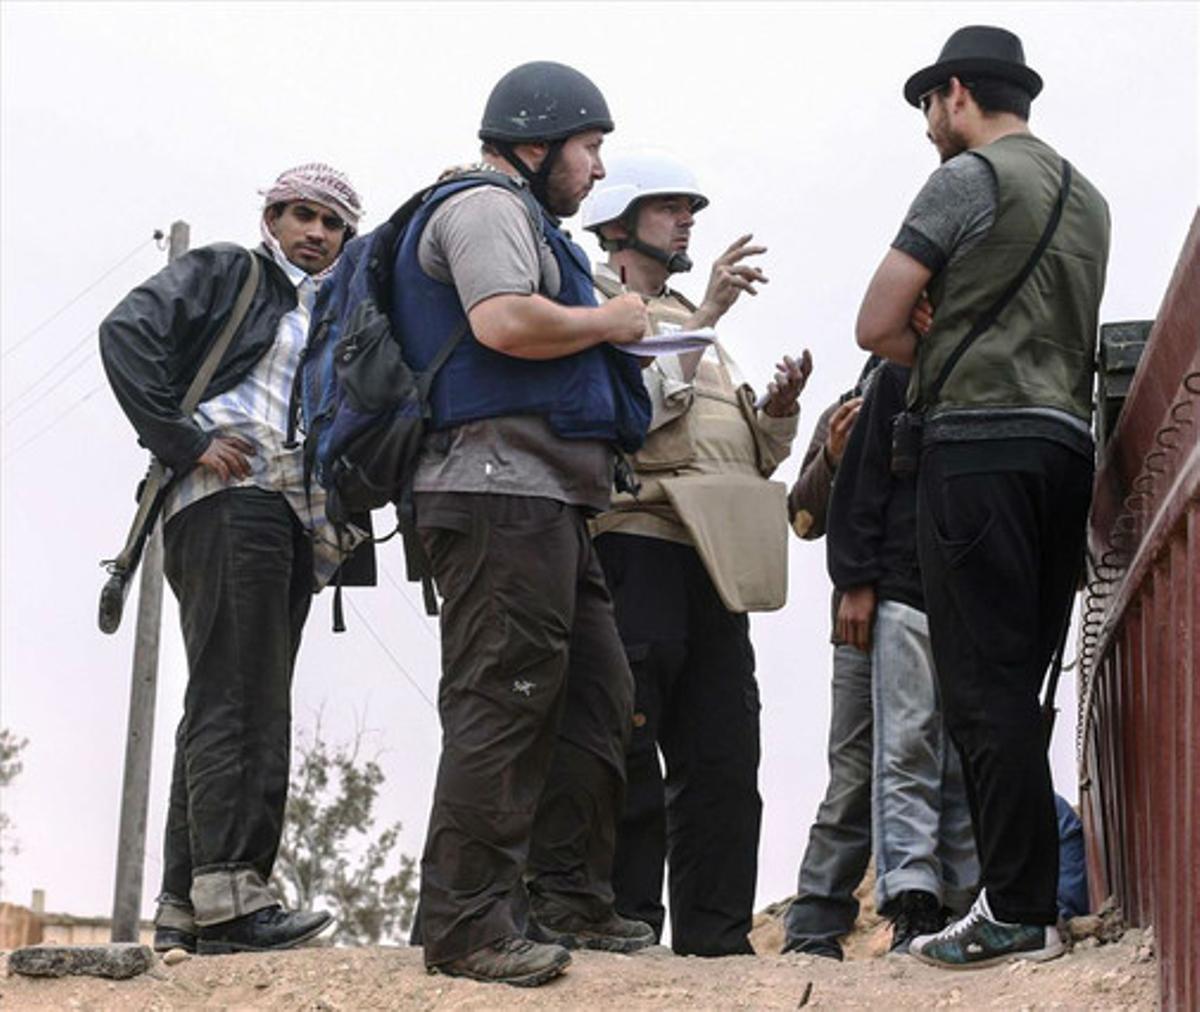 Steven Sotloff (al centre, amb casc negre) parla amb rebels libis a Al-Dafniya, a prop de Misrata, el juny del 2011.